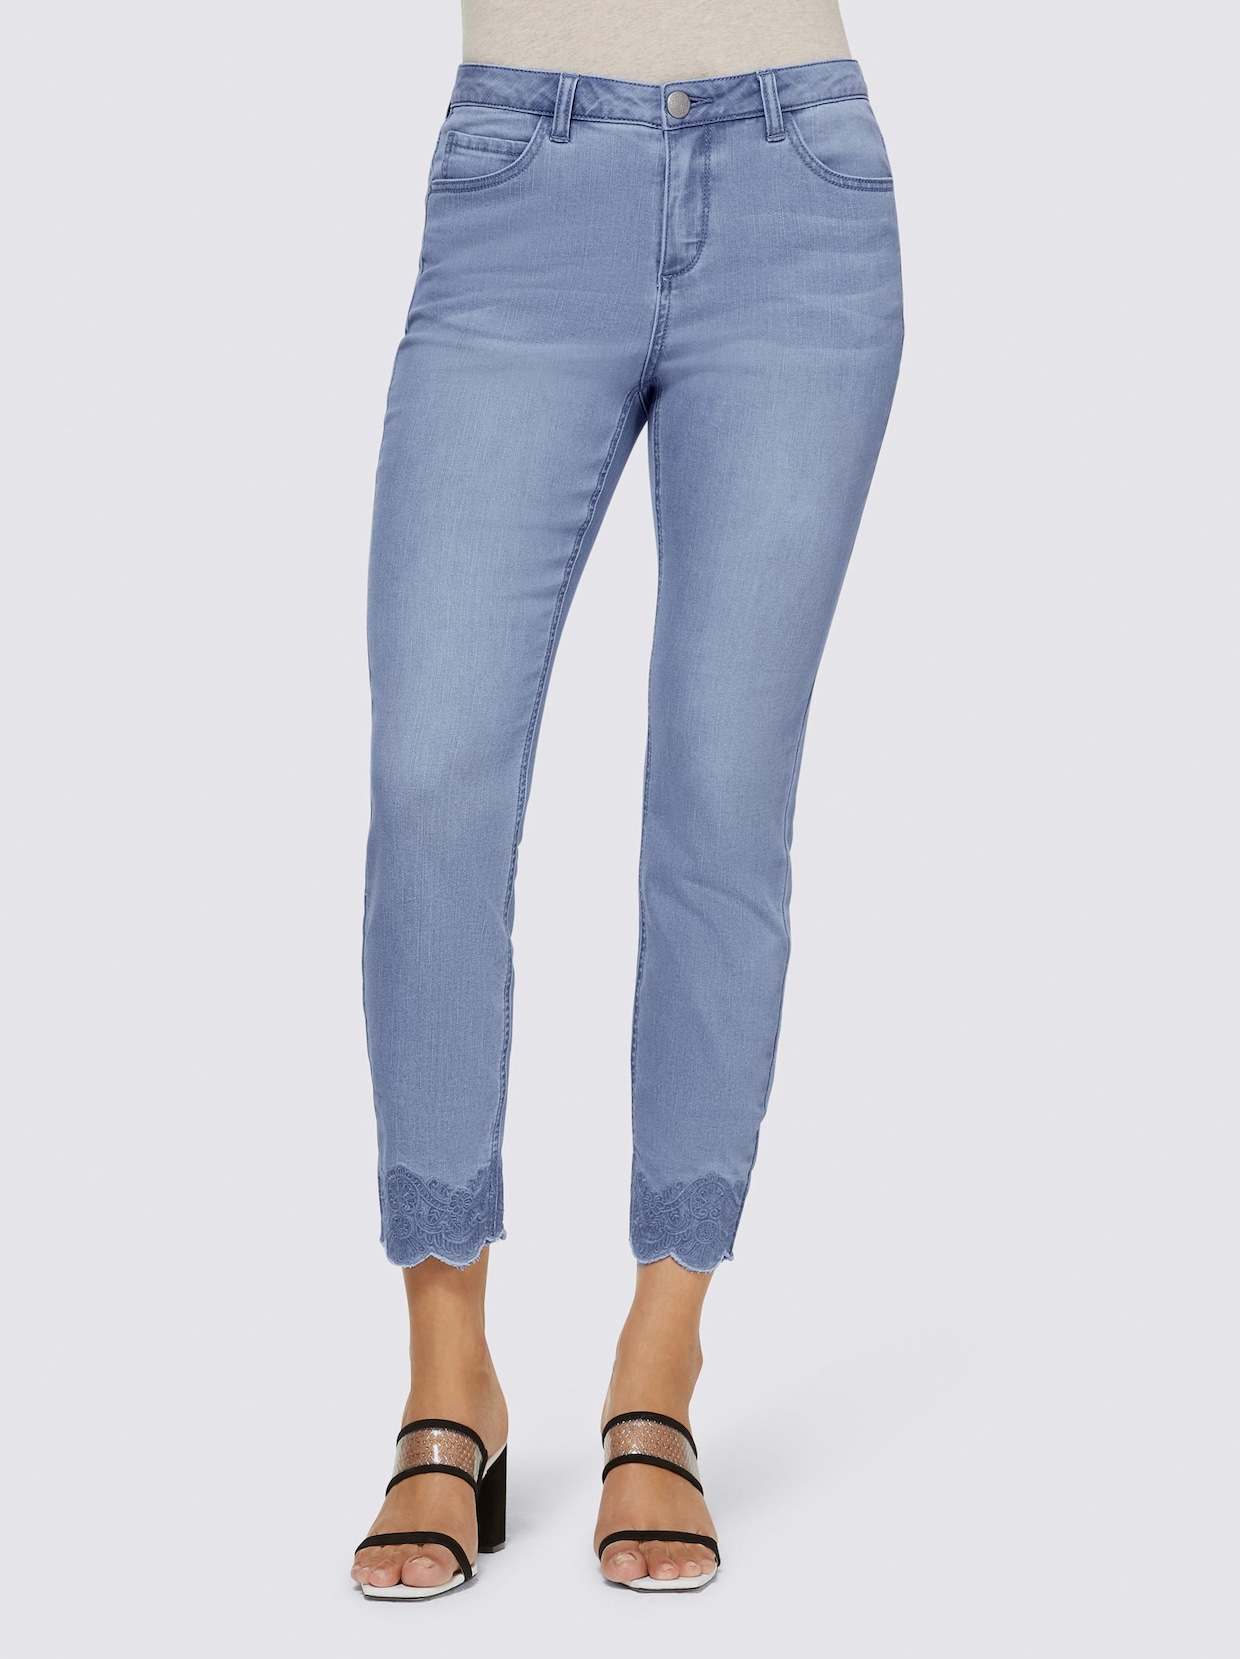 Auf welche Faktoren Sie zu Hause beim Kauf bei Formende jeans achten sollten!